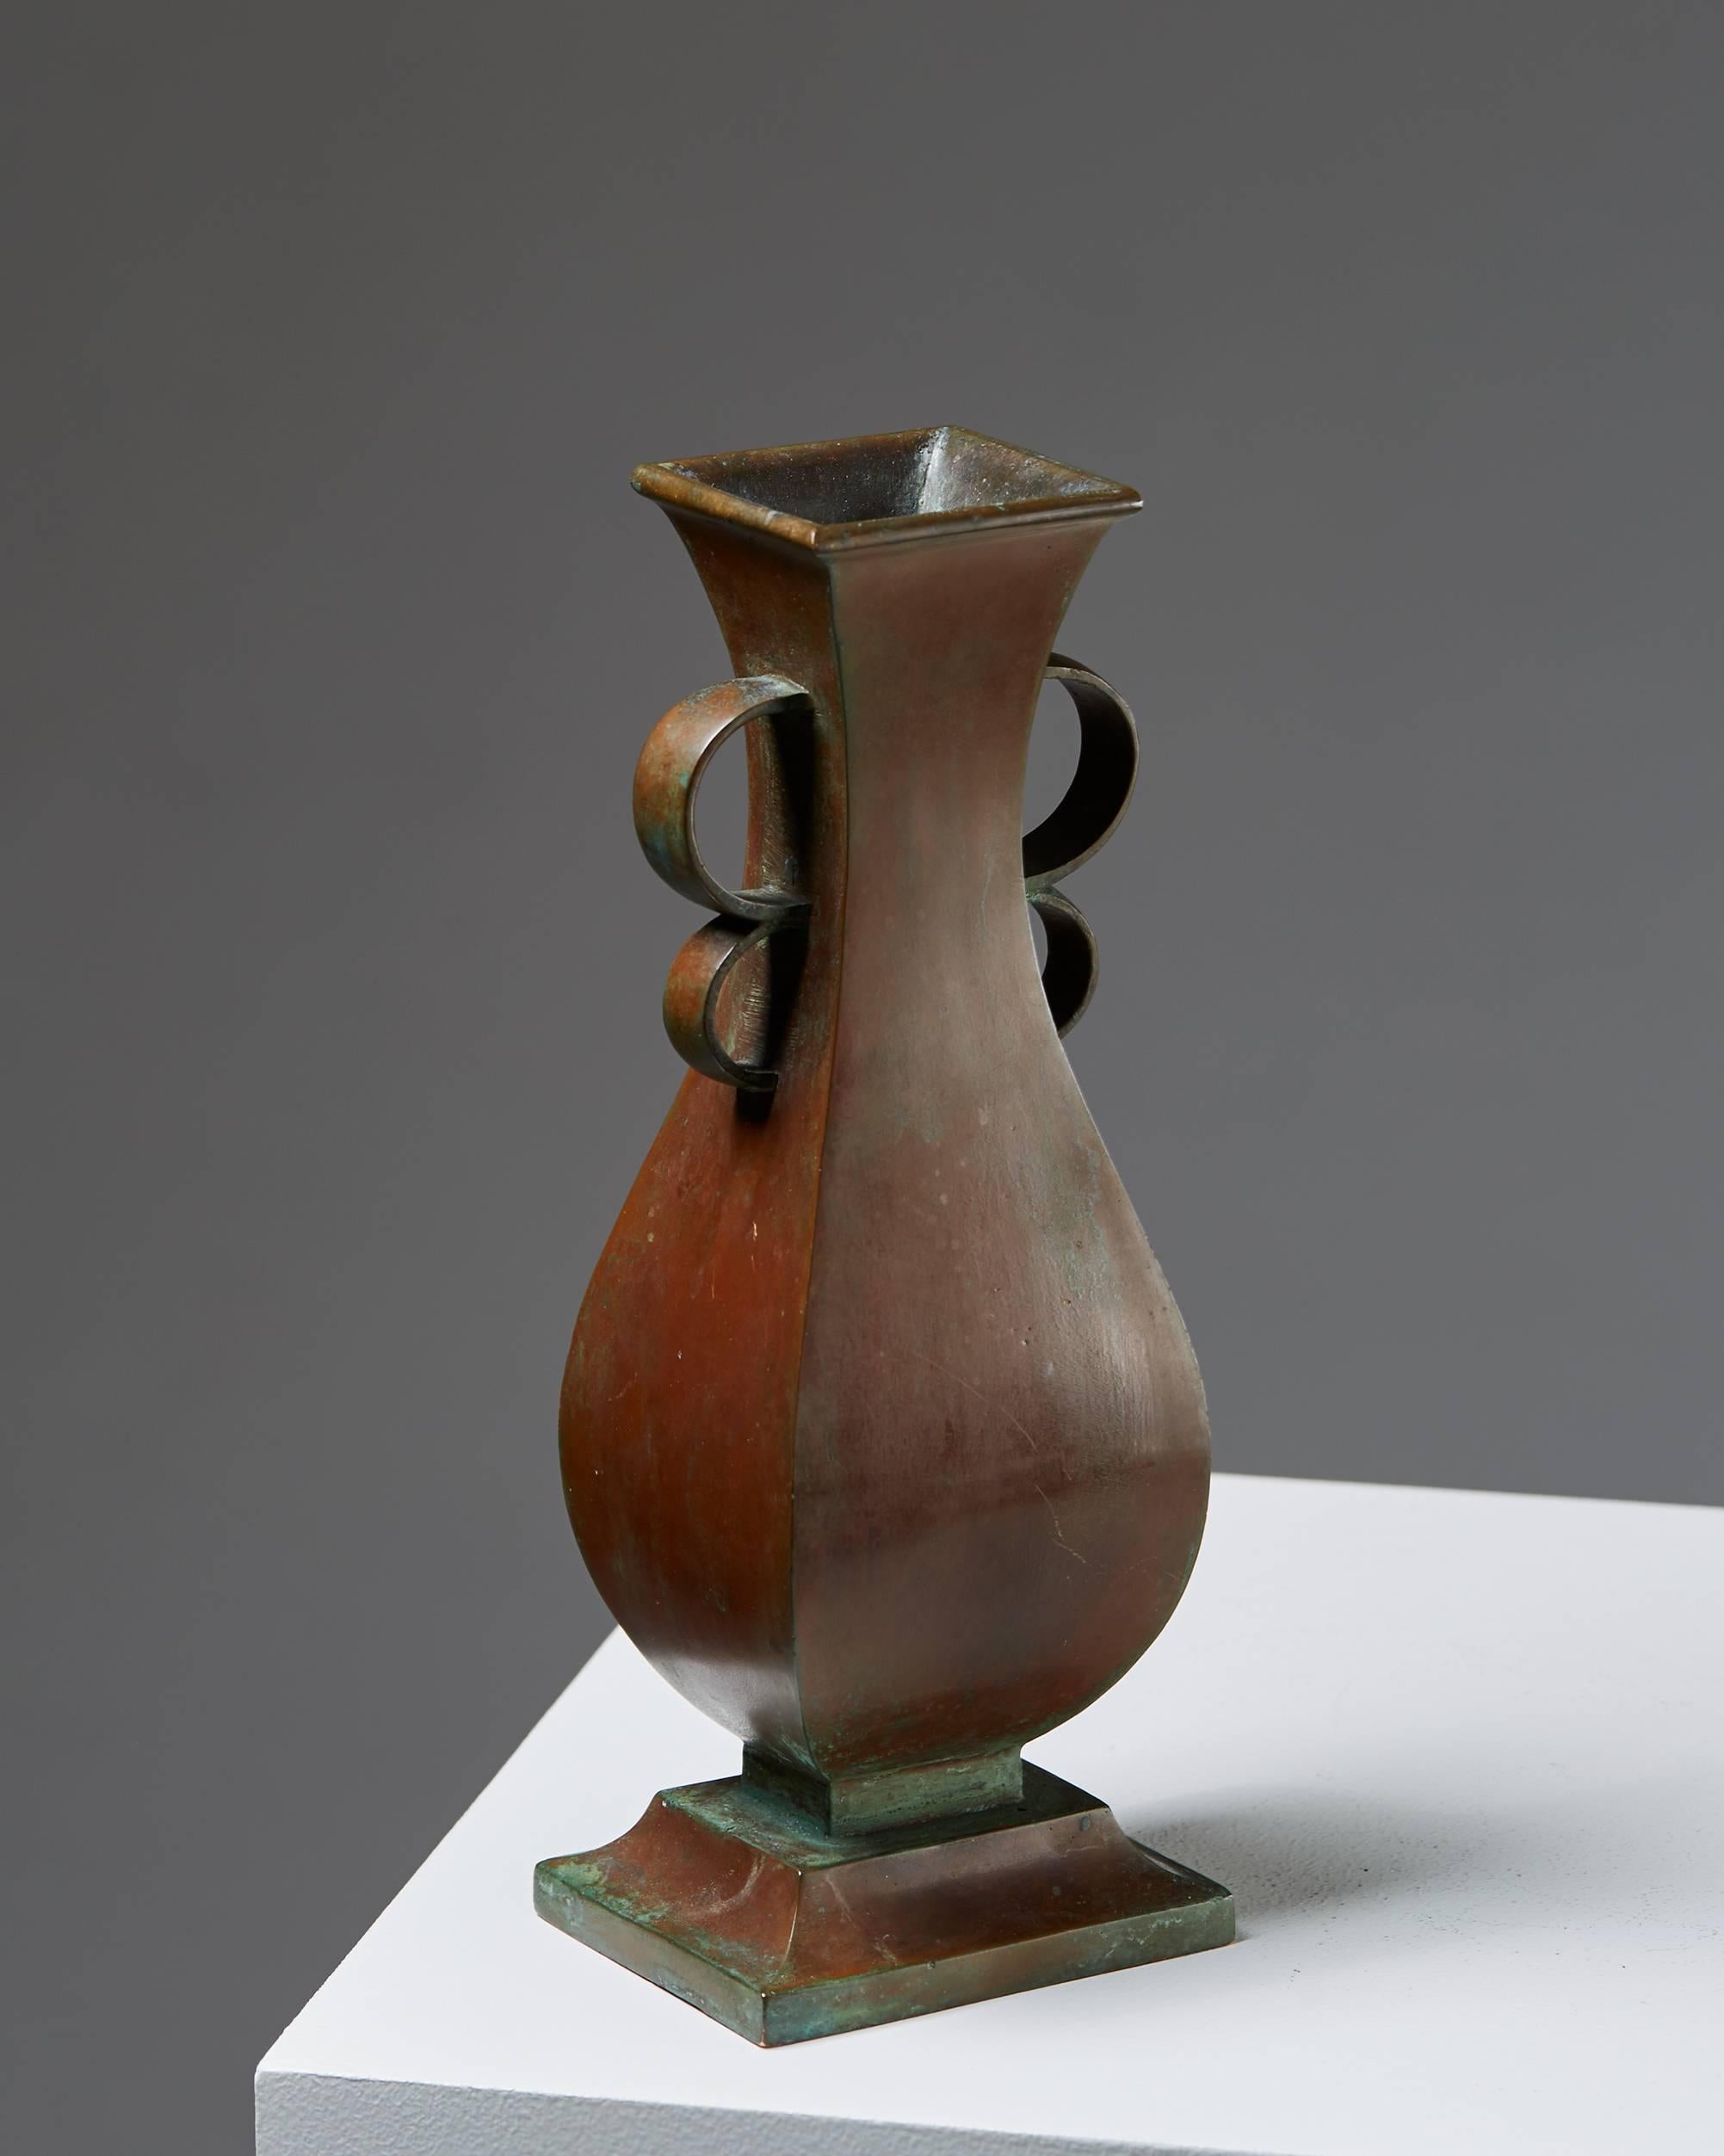 Vase designed by Sune Bäckström, Sweden, 1930s.
Bronze.

Measures: H 28 cm/ 7